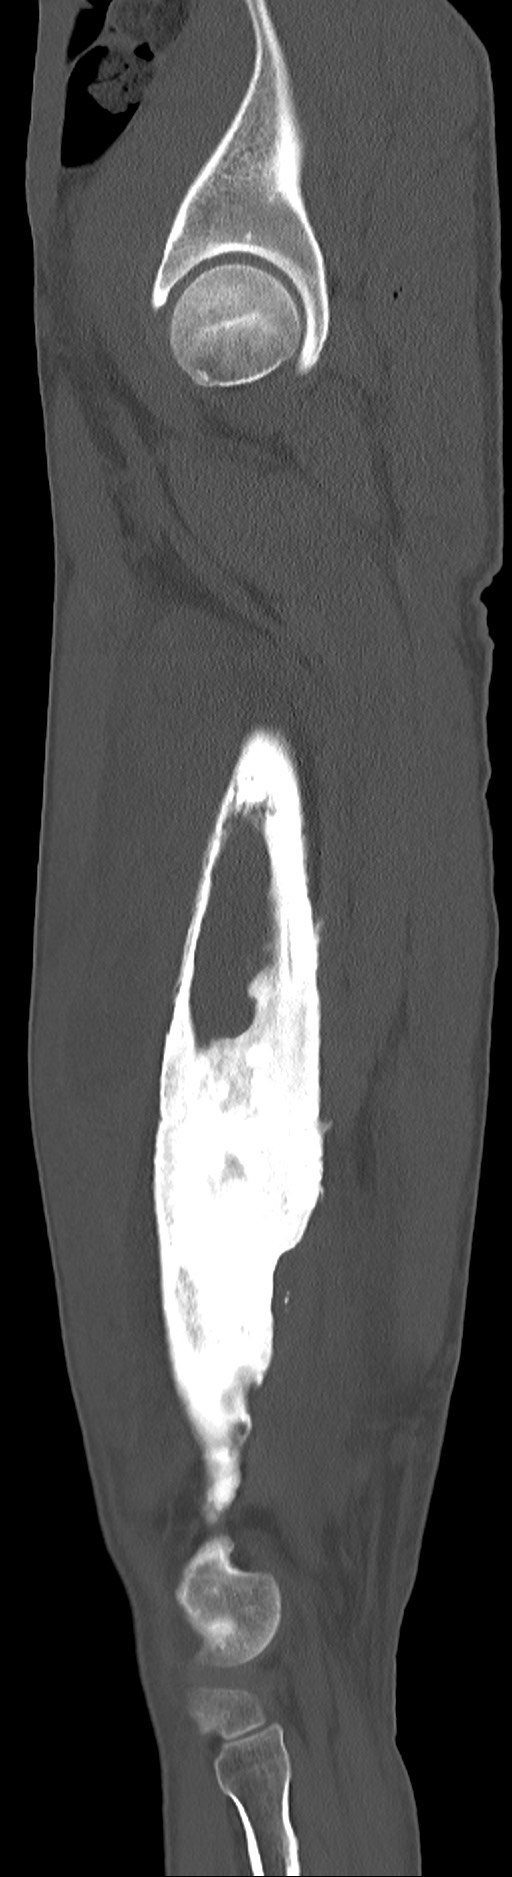 Chronic osteomyelitis (with sequestrum) (Radiopaedia 74813-85822 C 83).jpg